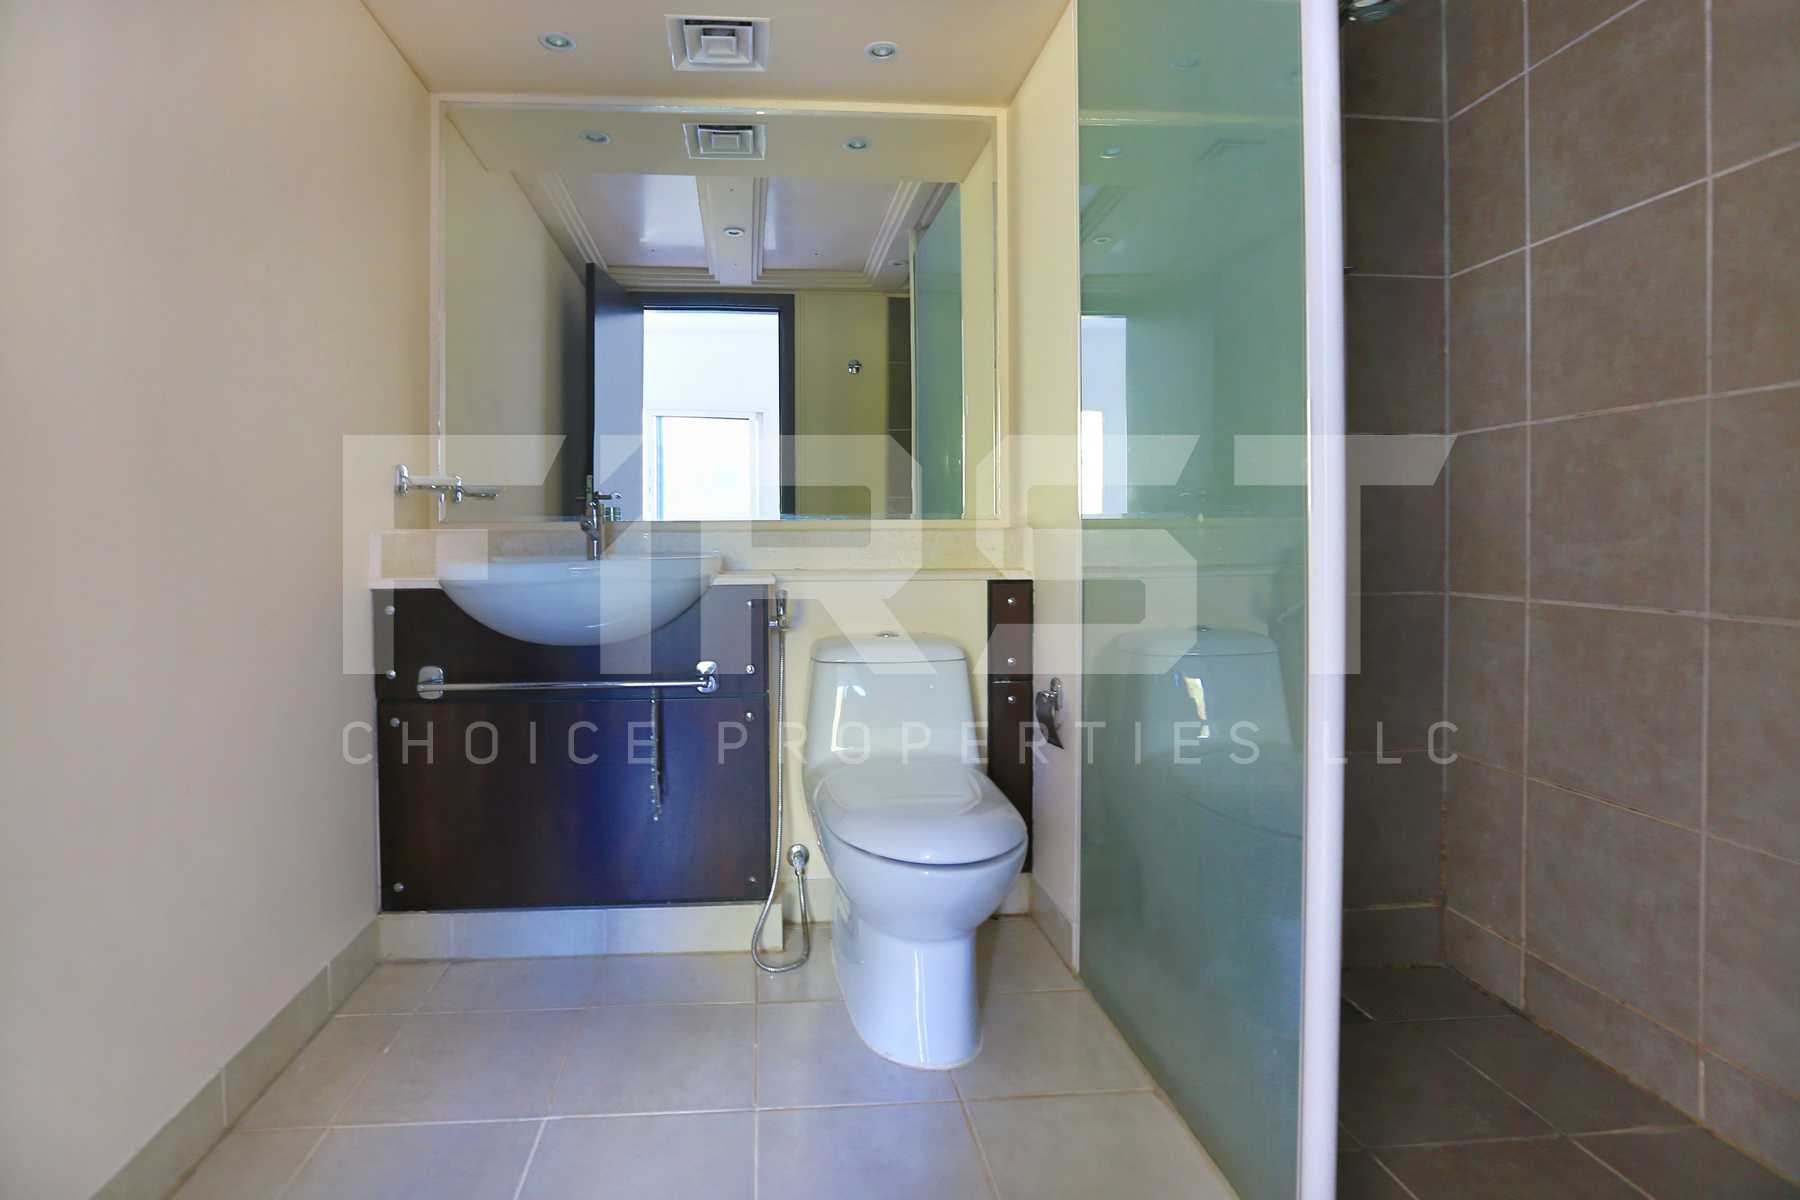 Internal Photo of 2 Bedroom Villa in Al Reef Villas  Al Reef Abu Dhabi UAE 170.2 sq.m 1832 sq.ft (17).jpg